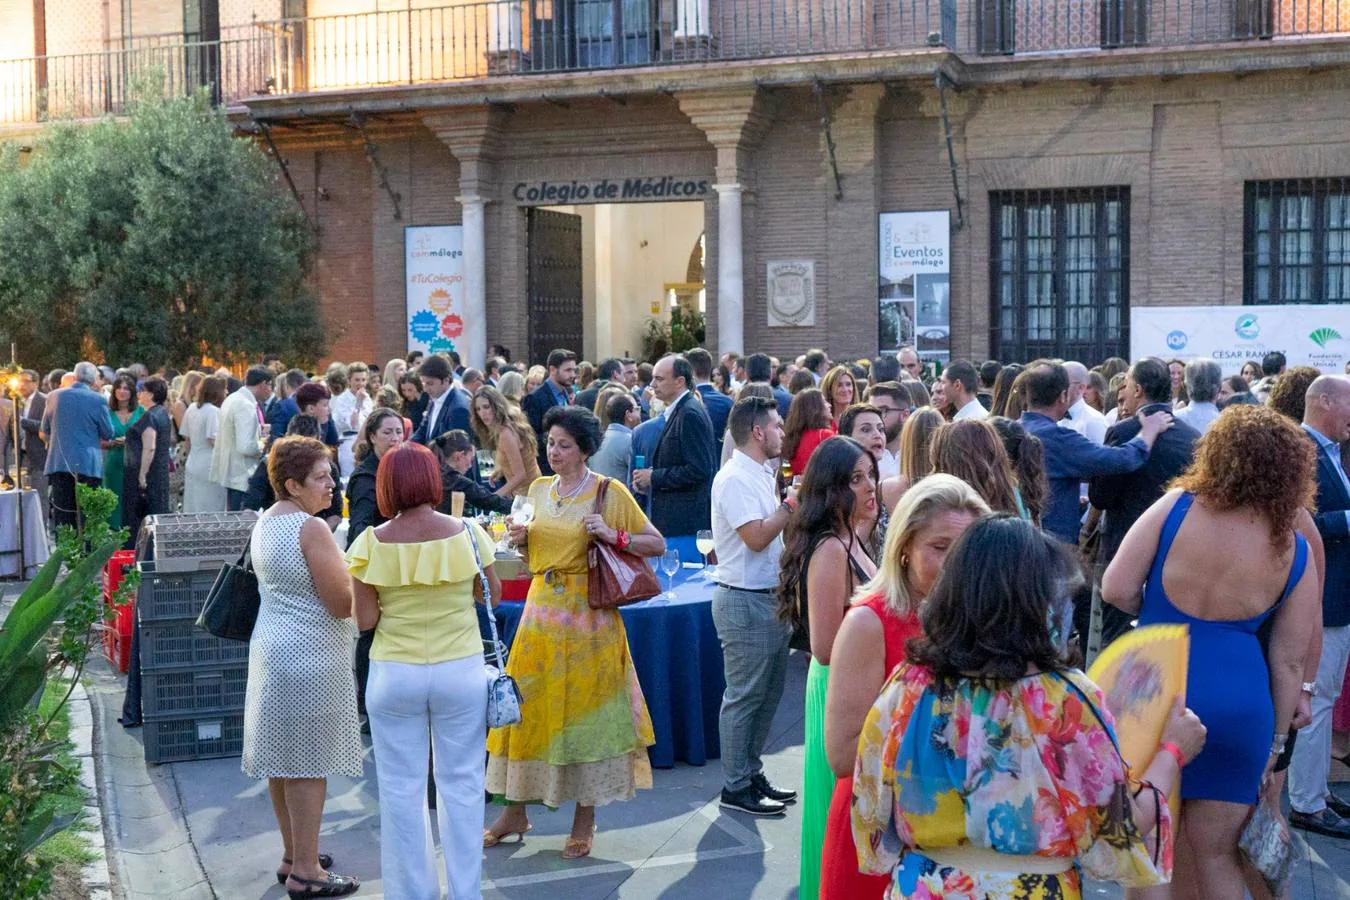 El Colegio de Médicos acoge la cena de gala Bisturí Solidario, organizada por César Ramírez. Un momento del acto en la terraza del Colegio de Médicos.